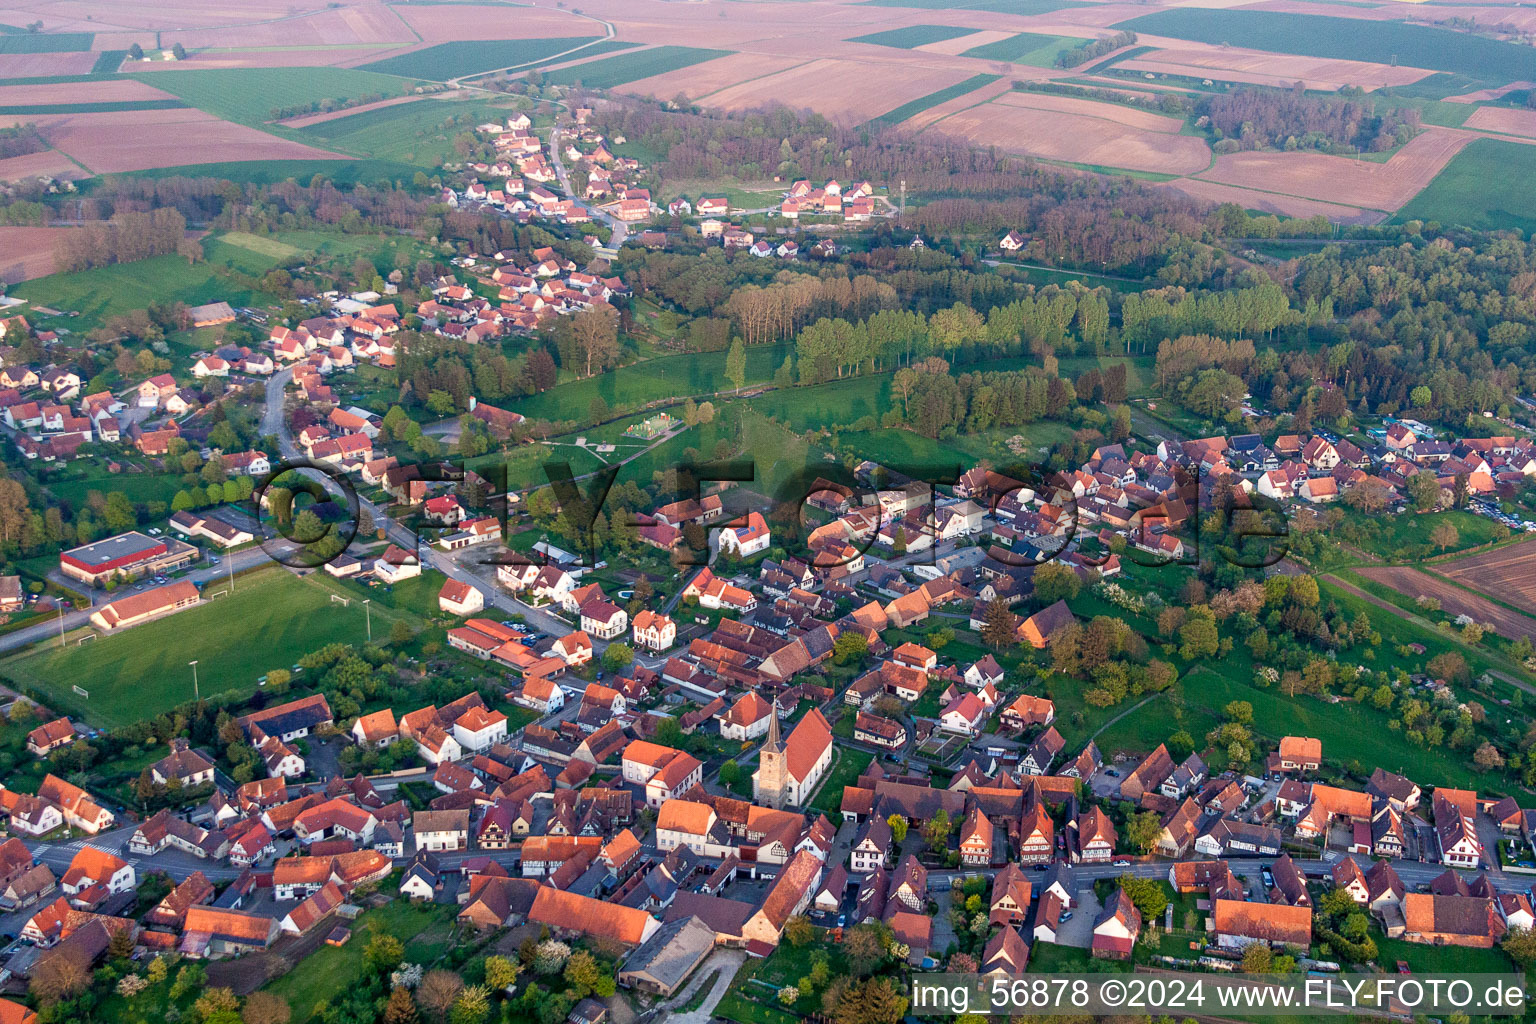 Champs agricoles et surfaces utilisables à Riedseltz dans le département Bas Rhin, France hors des airs